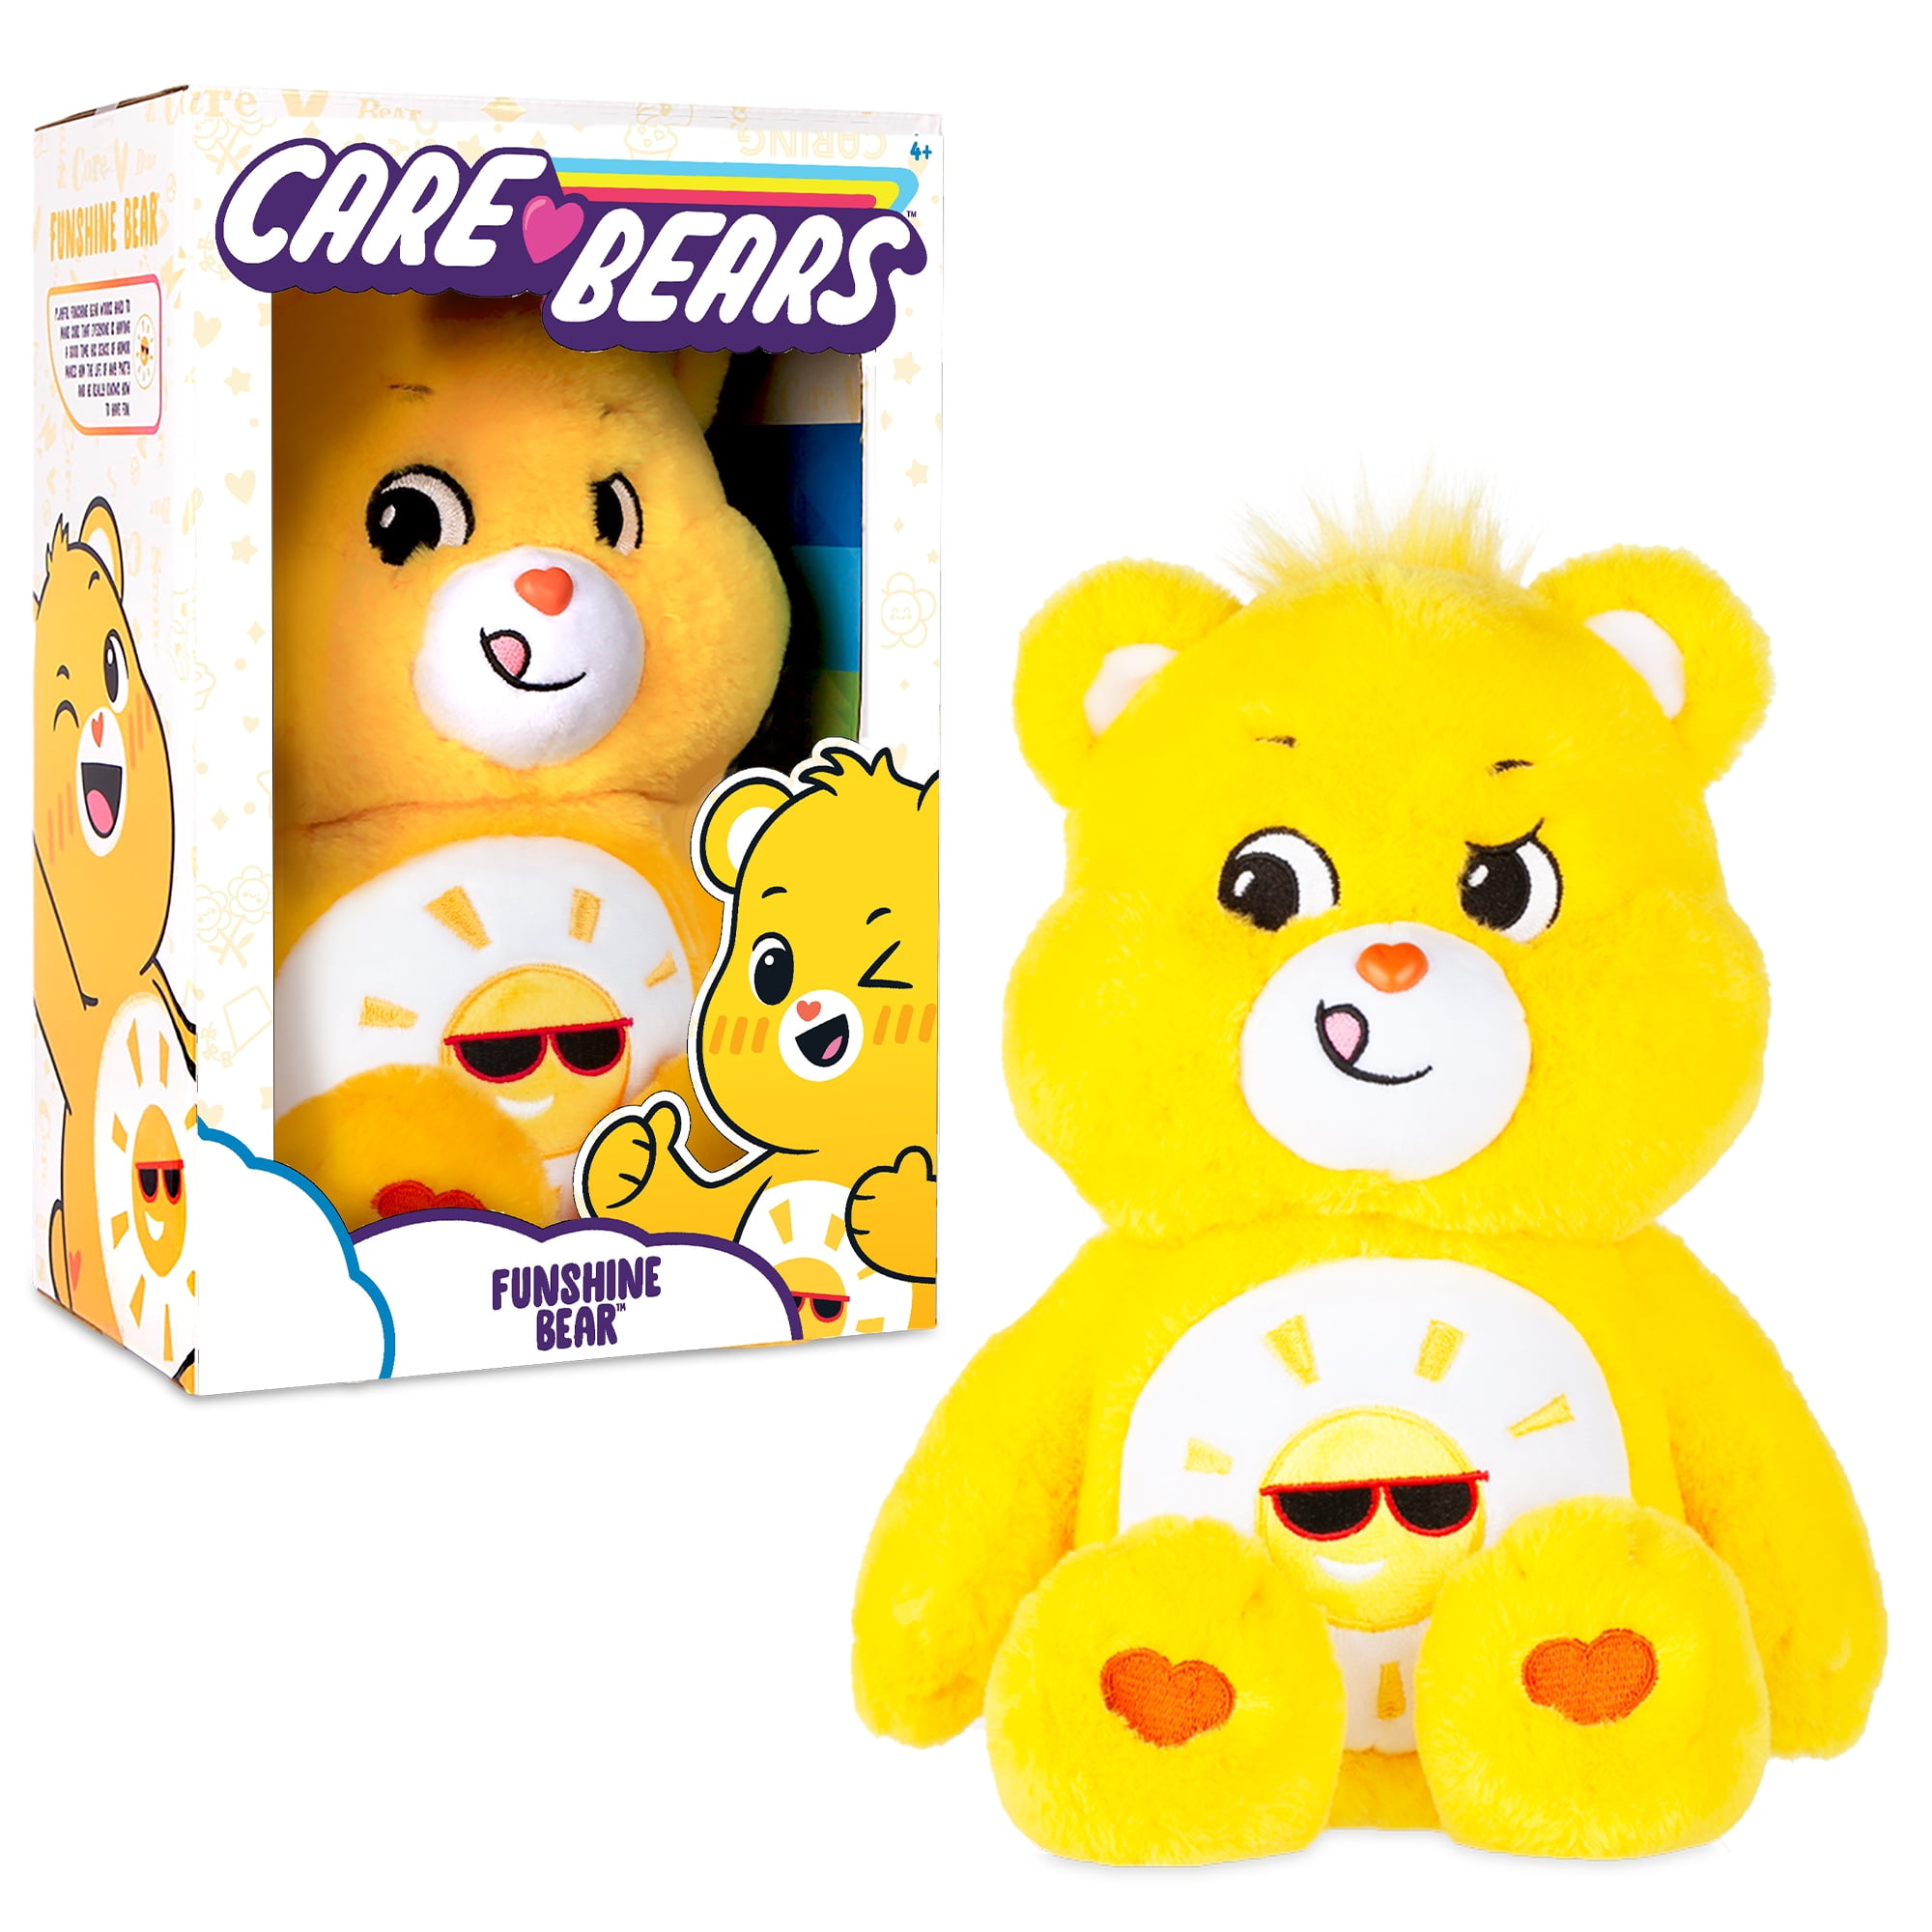 Care Bears 14' Plush - Funshine Bear - Soft Huggable Material!